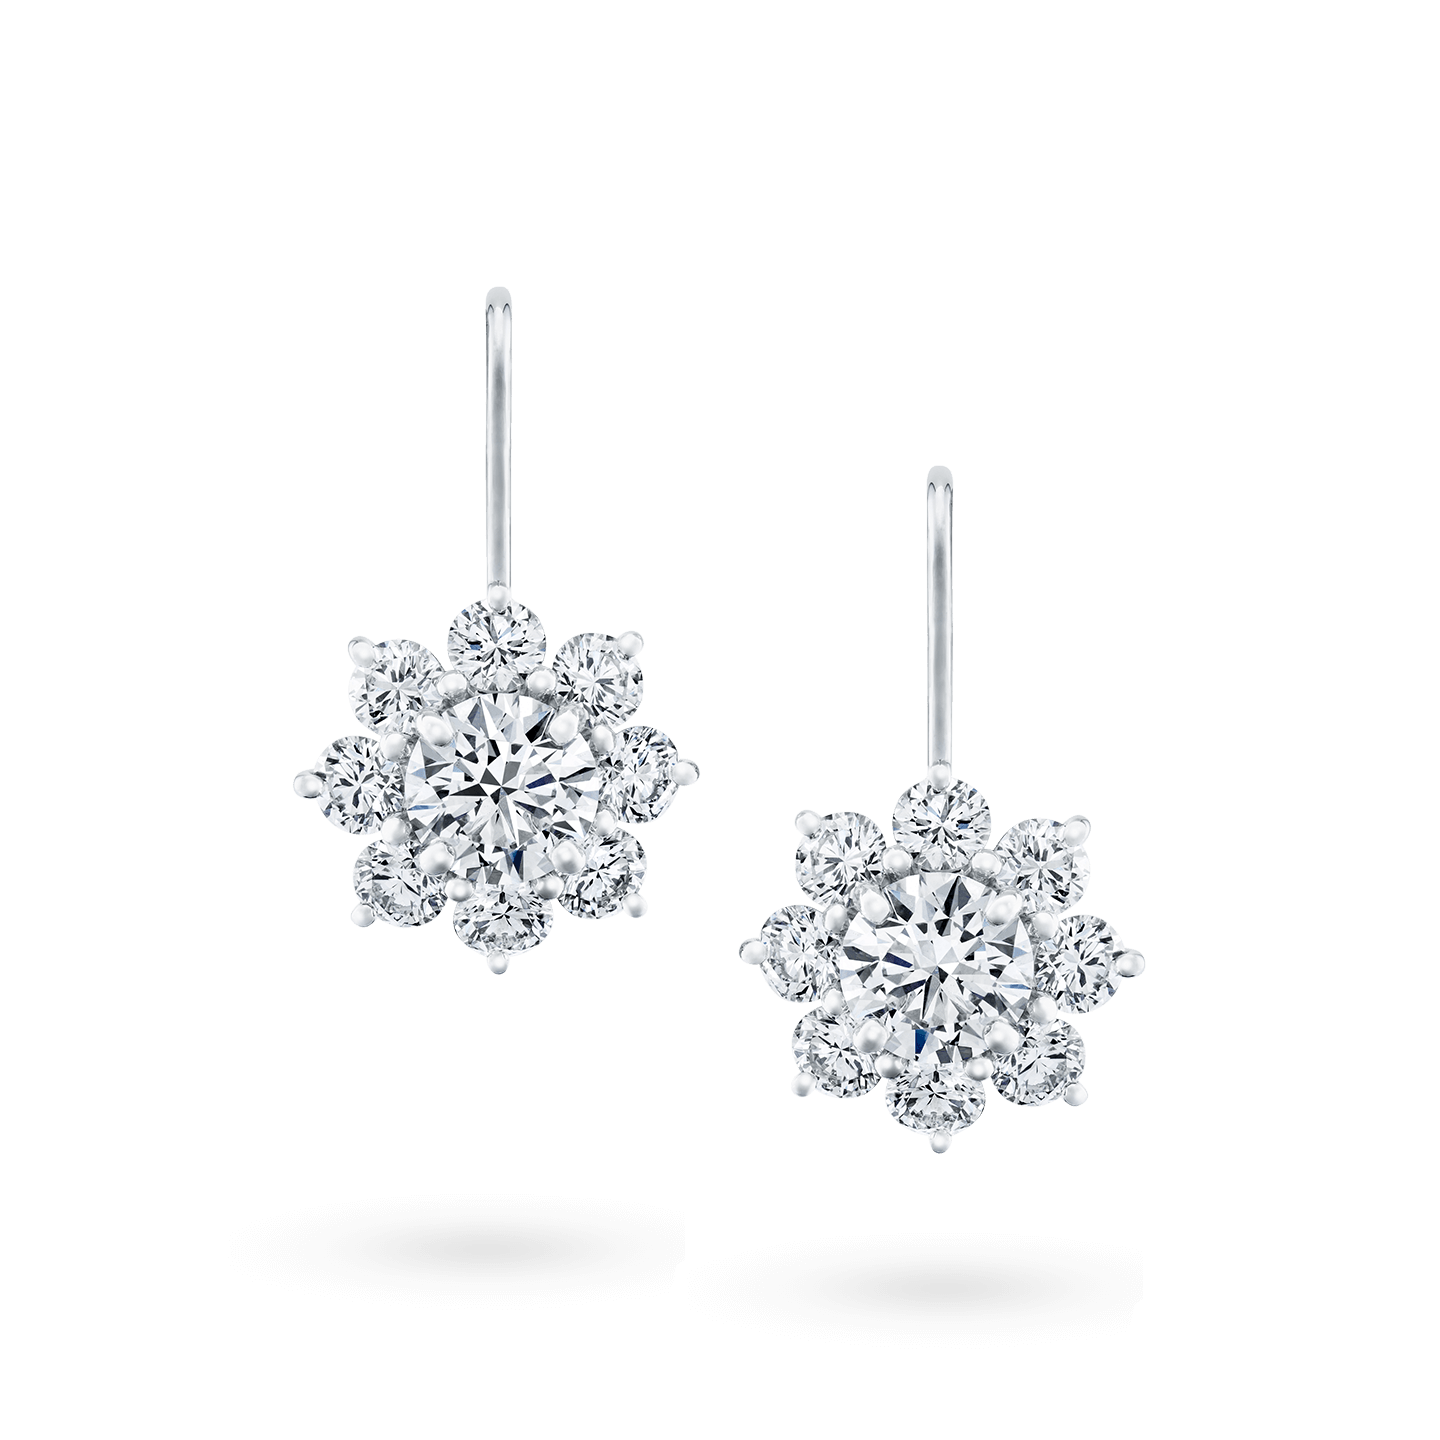 GIA Certified Emerald Cut Diamond Drop Earrings Signed by Harry Winston   Worlds Best